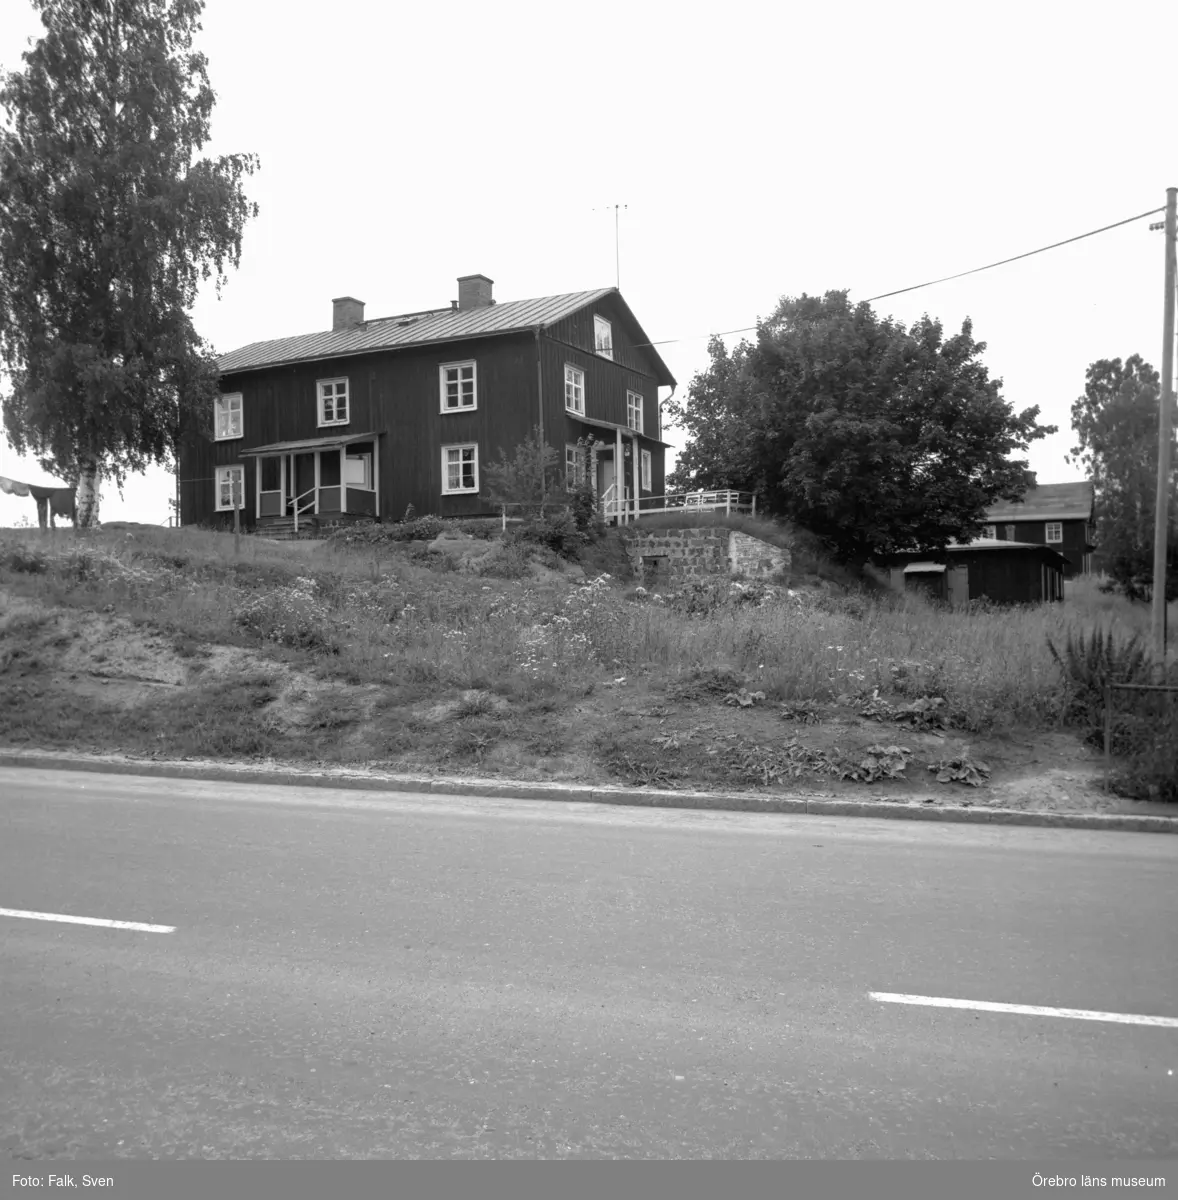 Boforsinventeringen, arbetarbostäder. Gråbo, Korpkullen.
Hus 1003, från sydost.